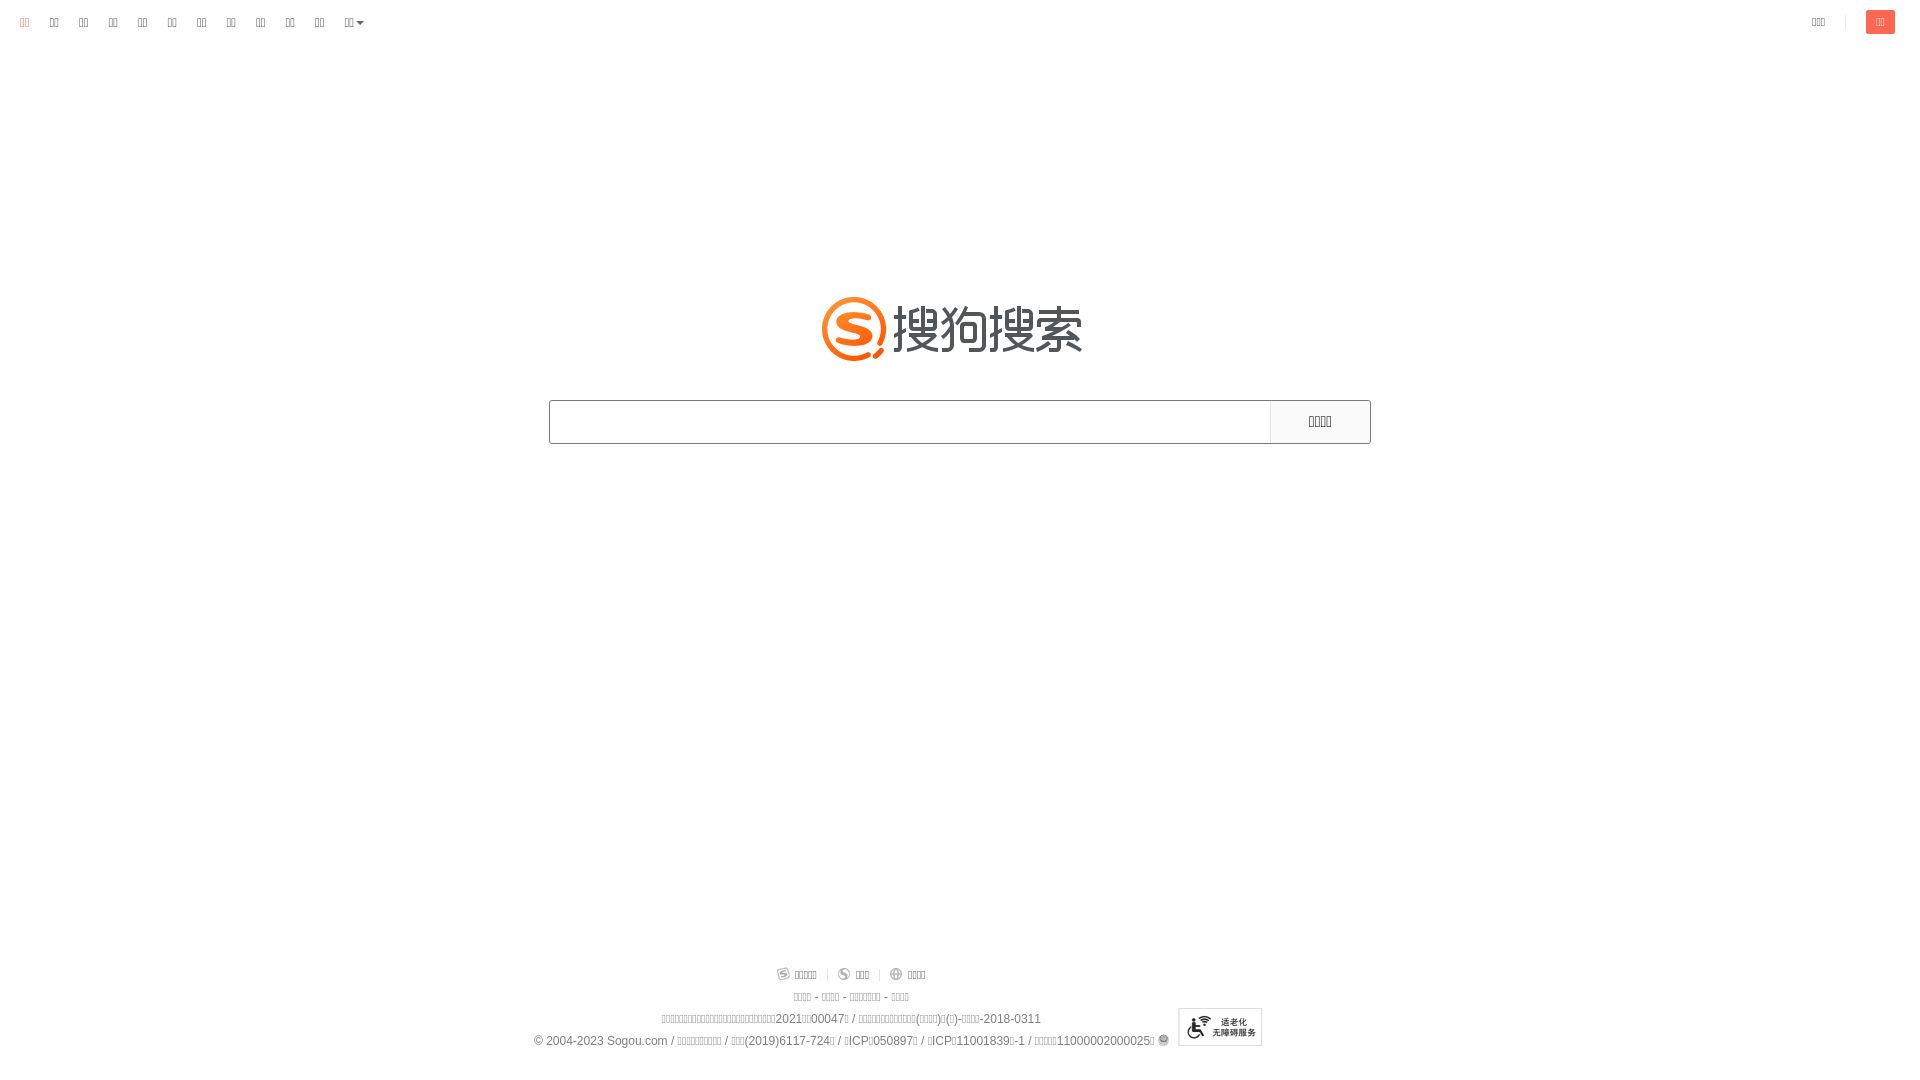 Status do site sogou.com está   ONLINE